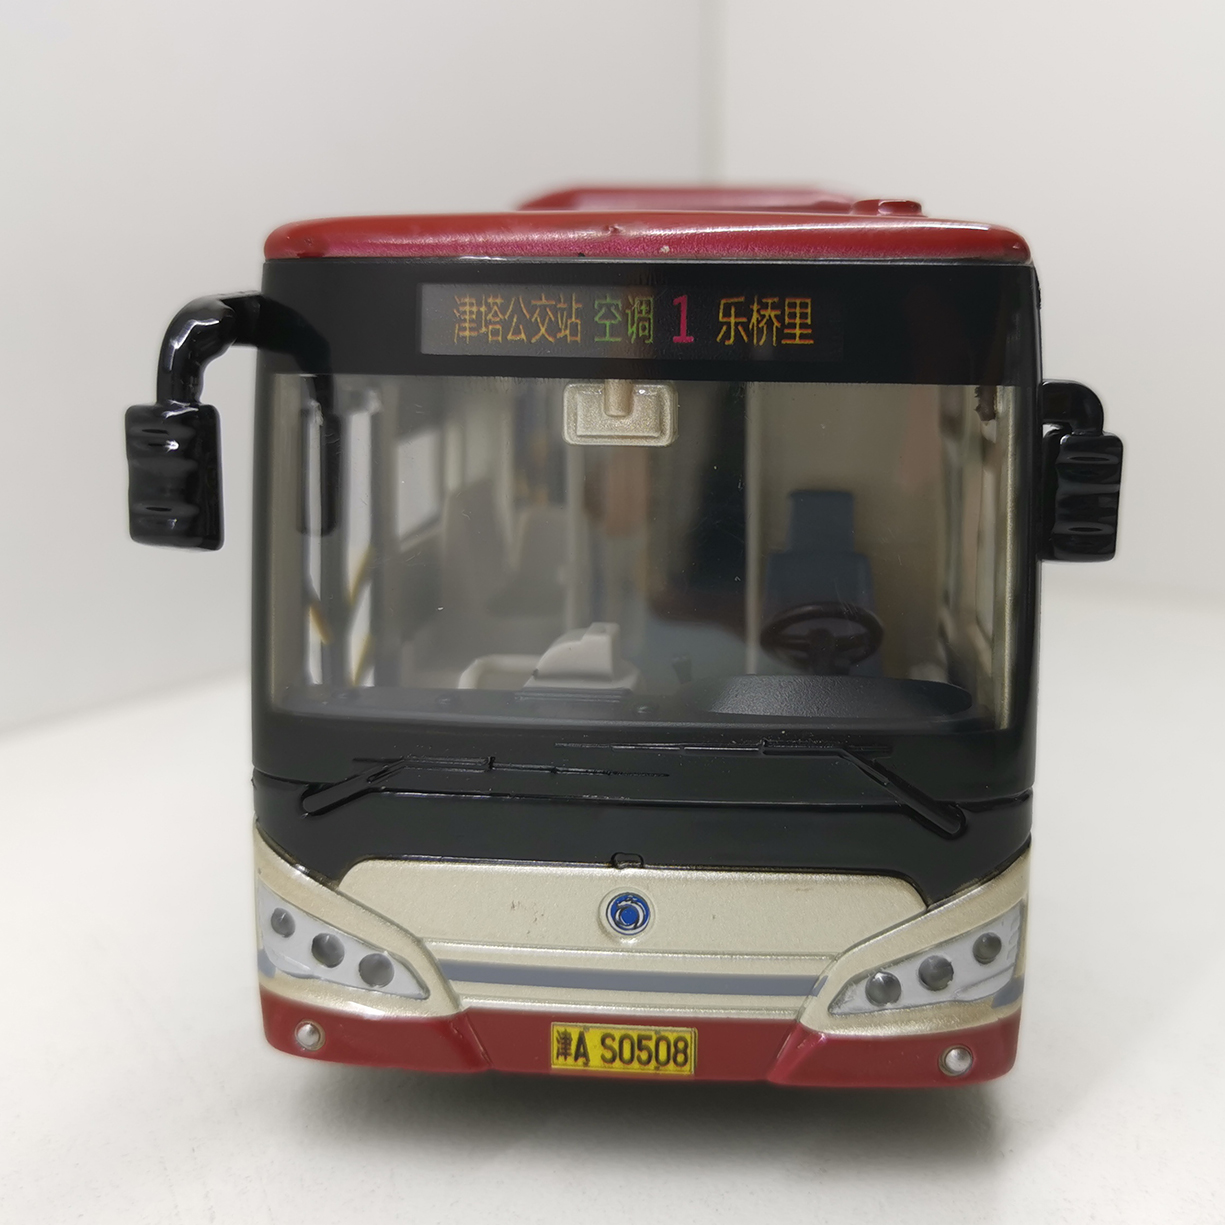 高档天津公交巴士仿真模型申龙客车合金儿童玩具车1:43多种线路可